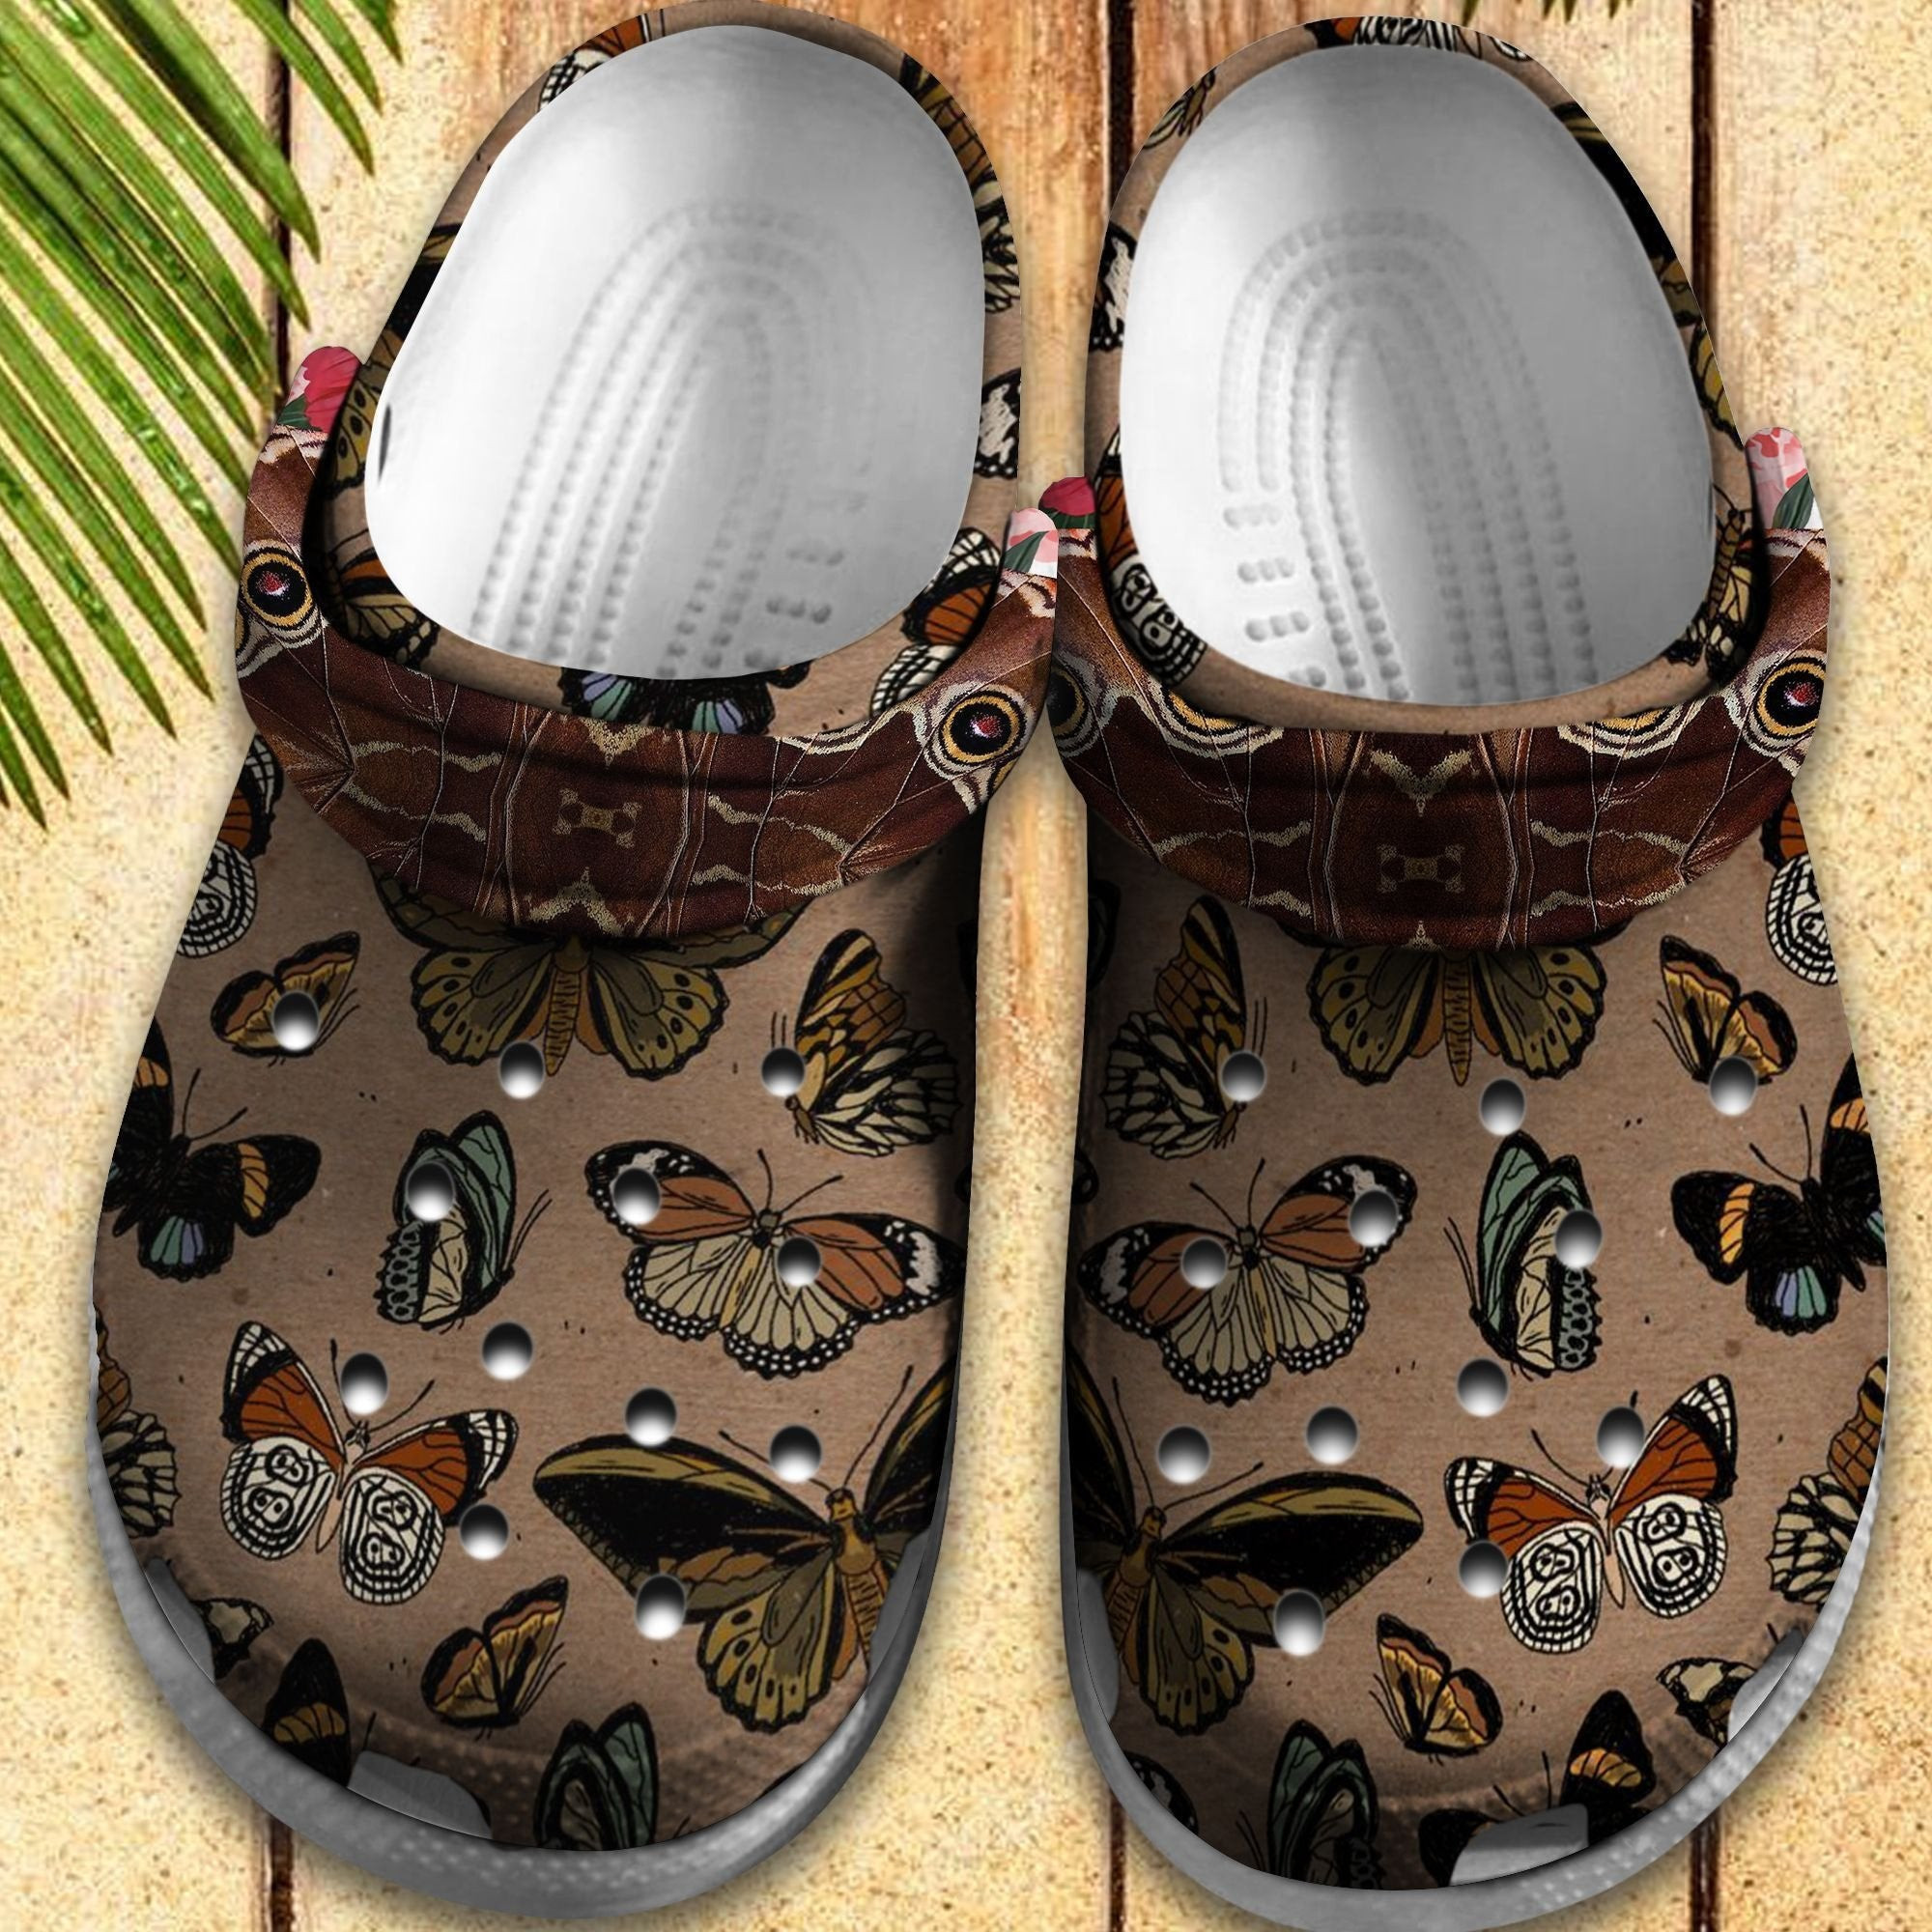 Butterflies Vintage Crocs Shoes - Butterflies Garden Clog Gift For Women Girl Grandma Mother